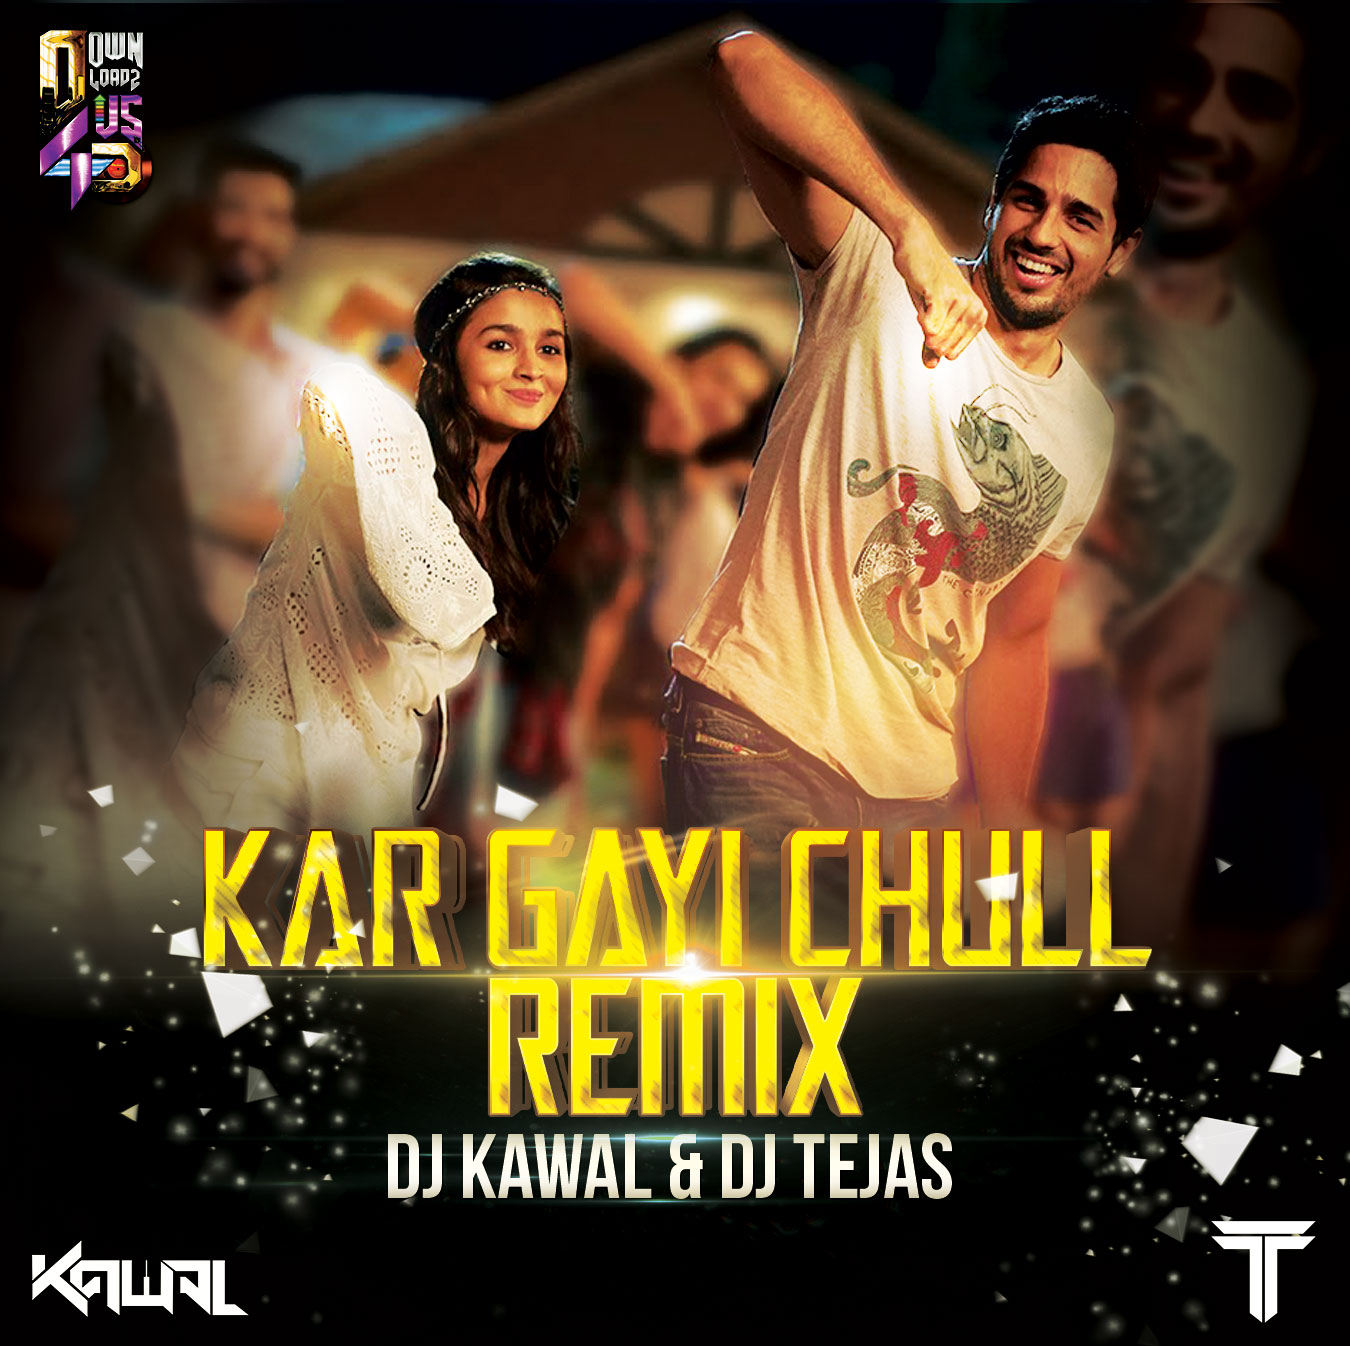 Beautiful Kar Gayi Chull Sex - Kar Gayi Chull - Remix - DJ Kawal & DJ Tejas - Downloads4Djs